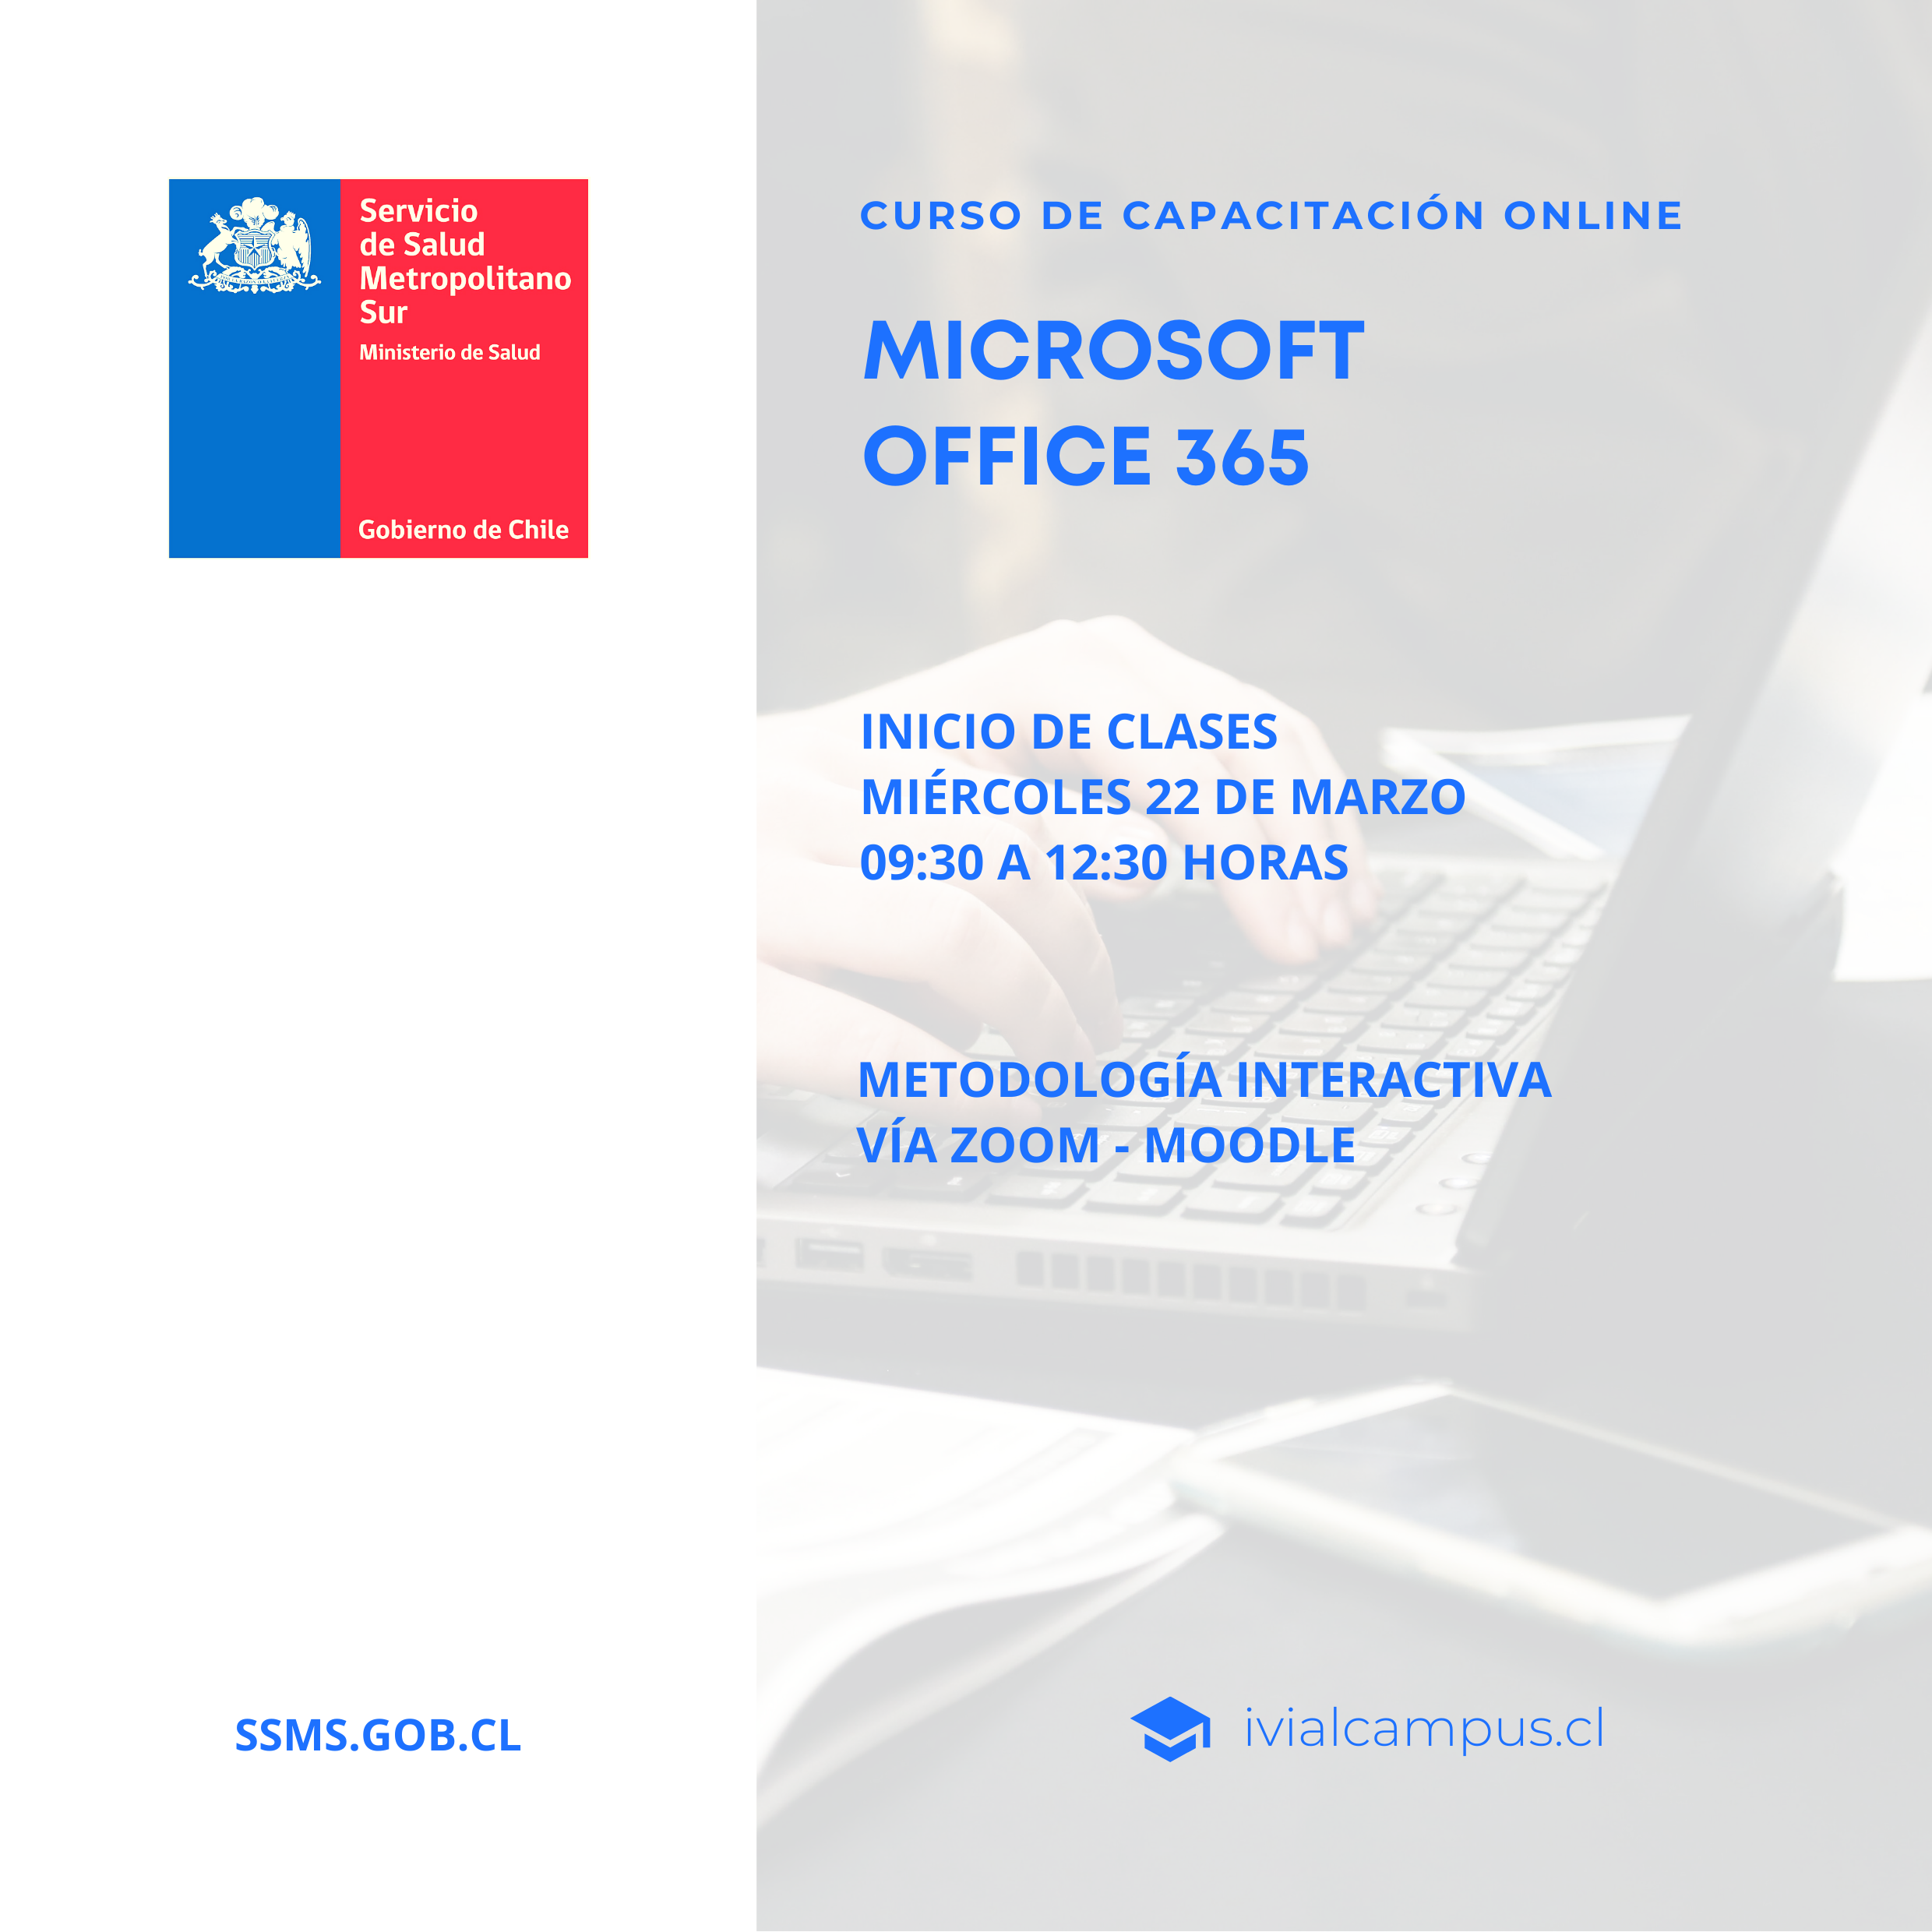 SERVICIO DE SALUD METROPOLITANO SUR: Microsoft Office 365